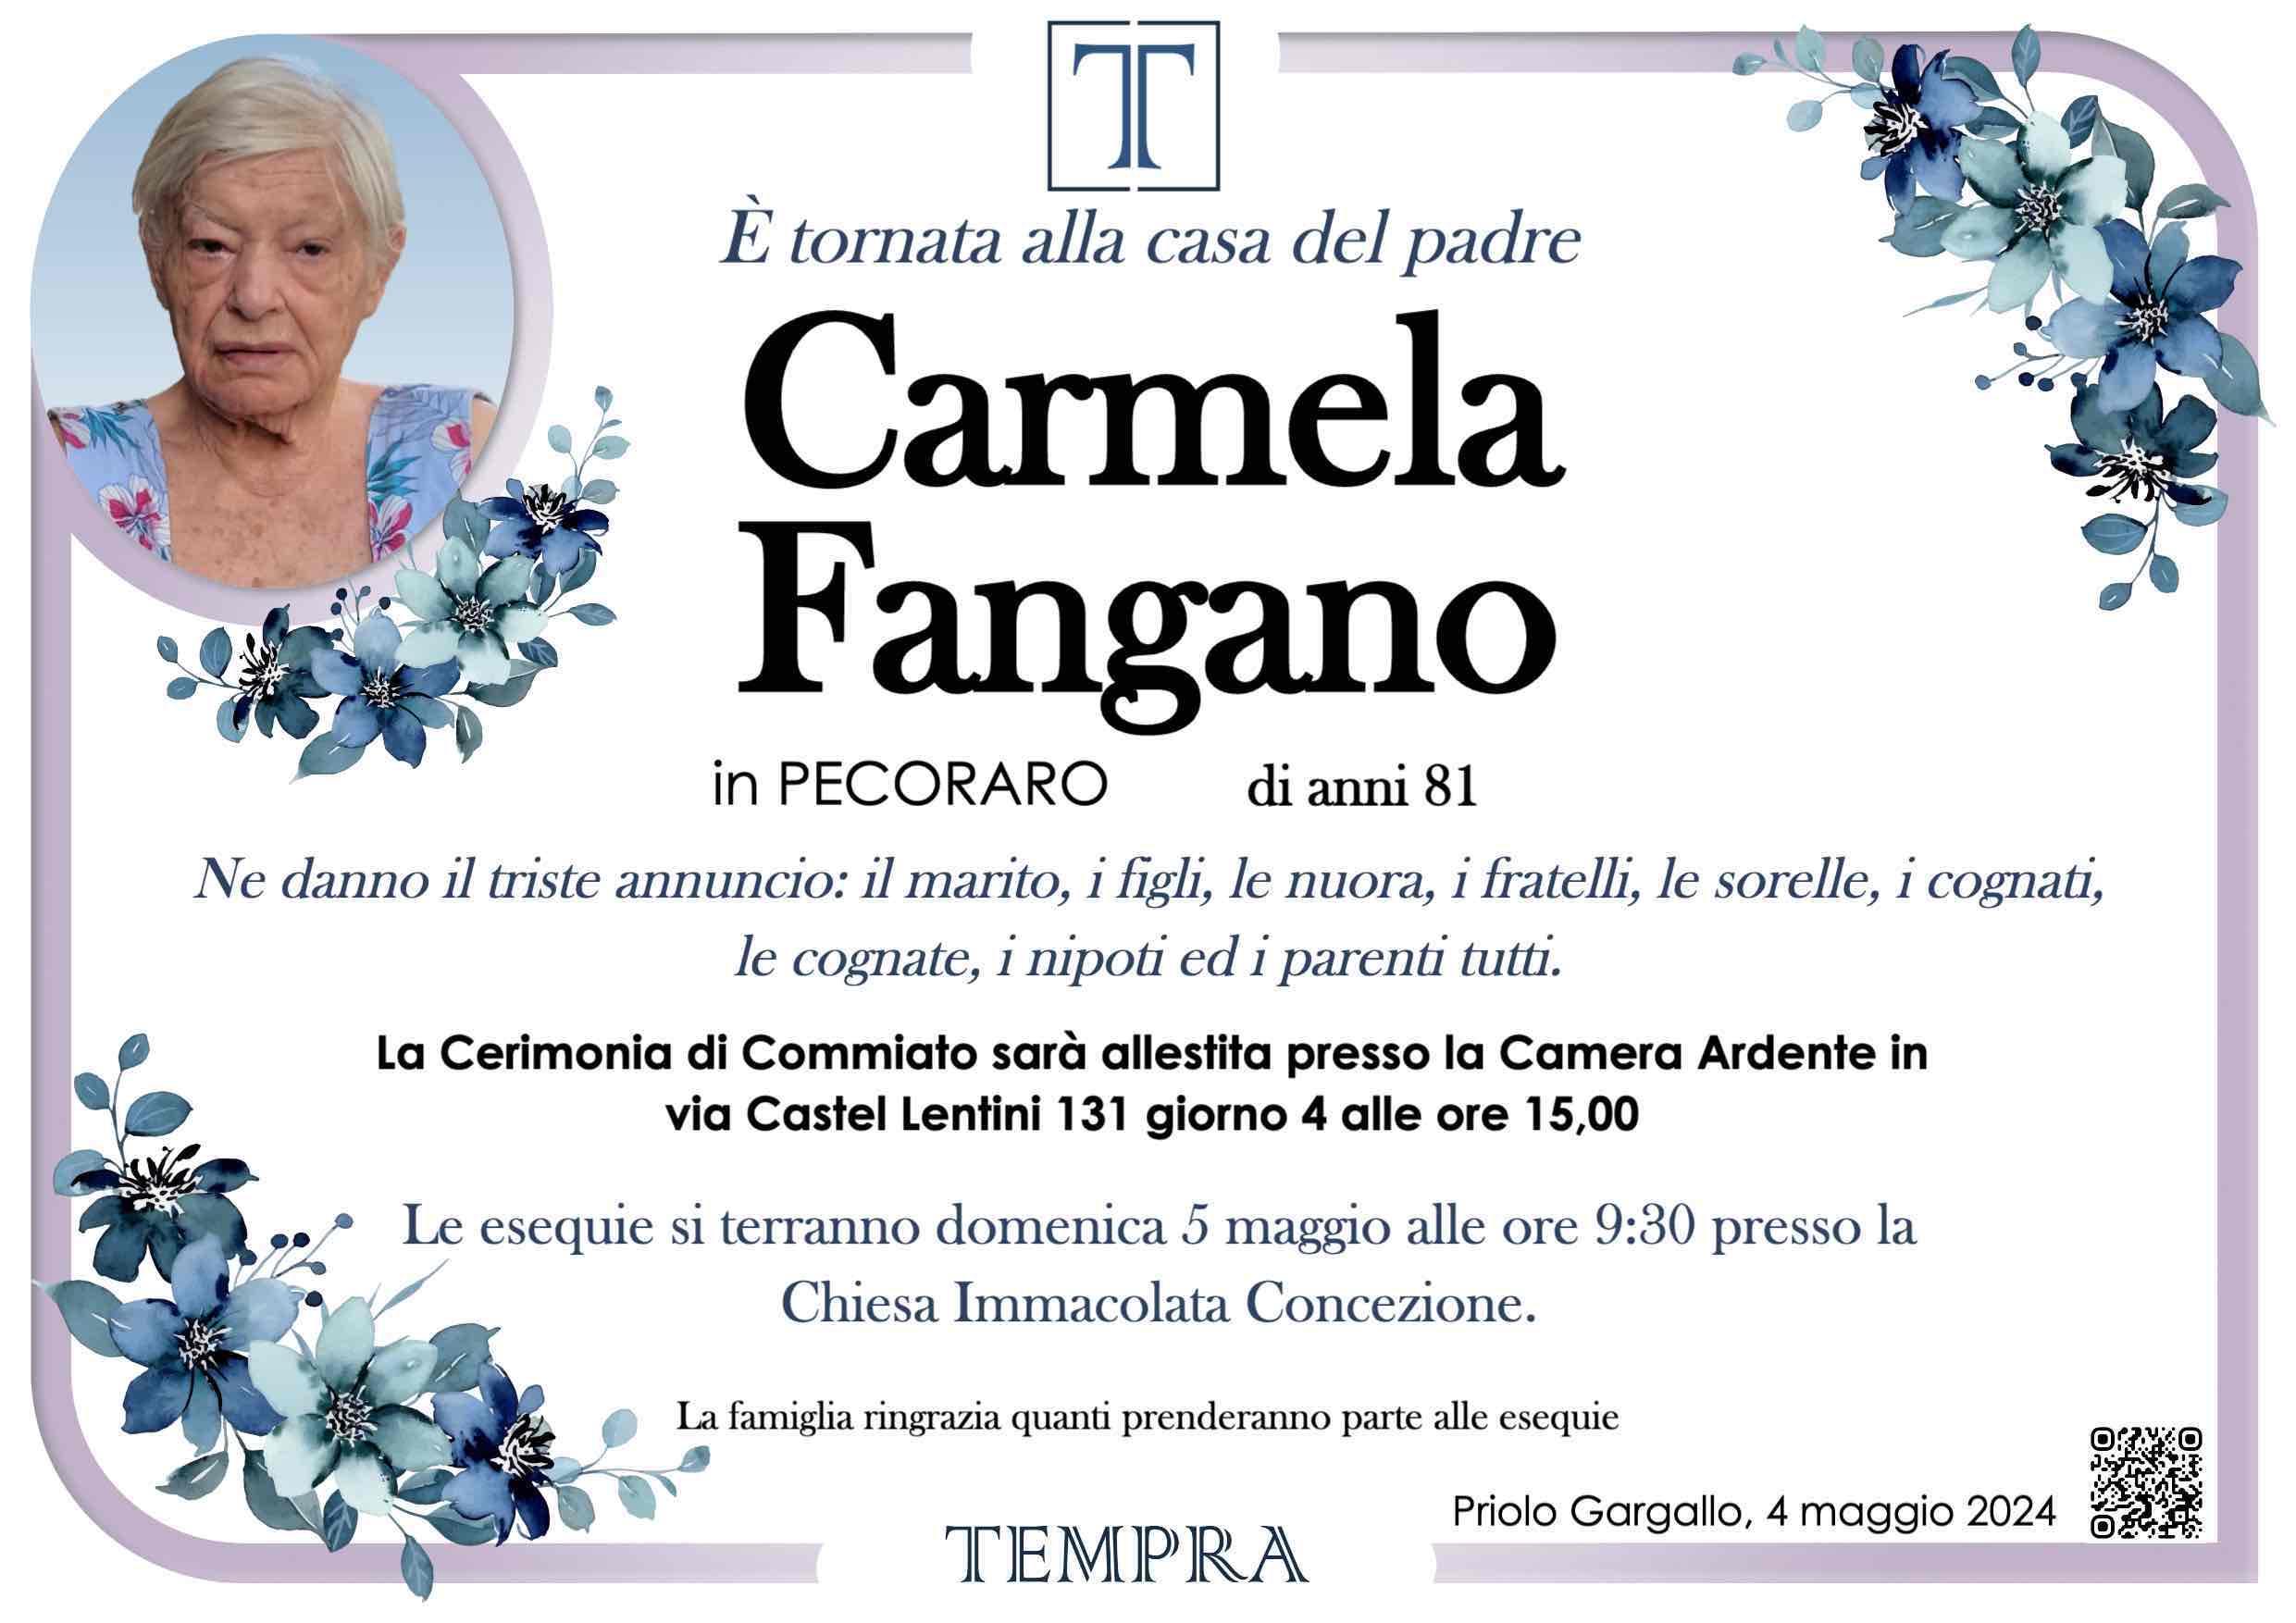 Carmela Fangano